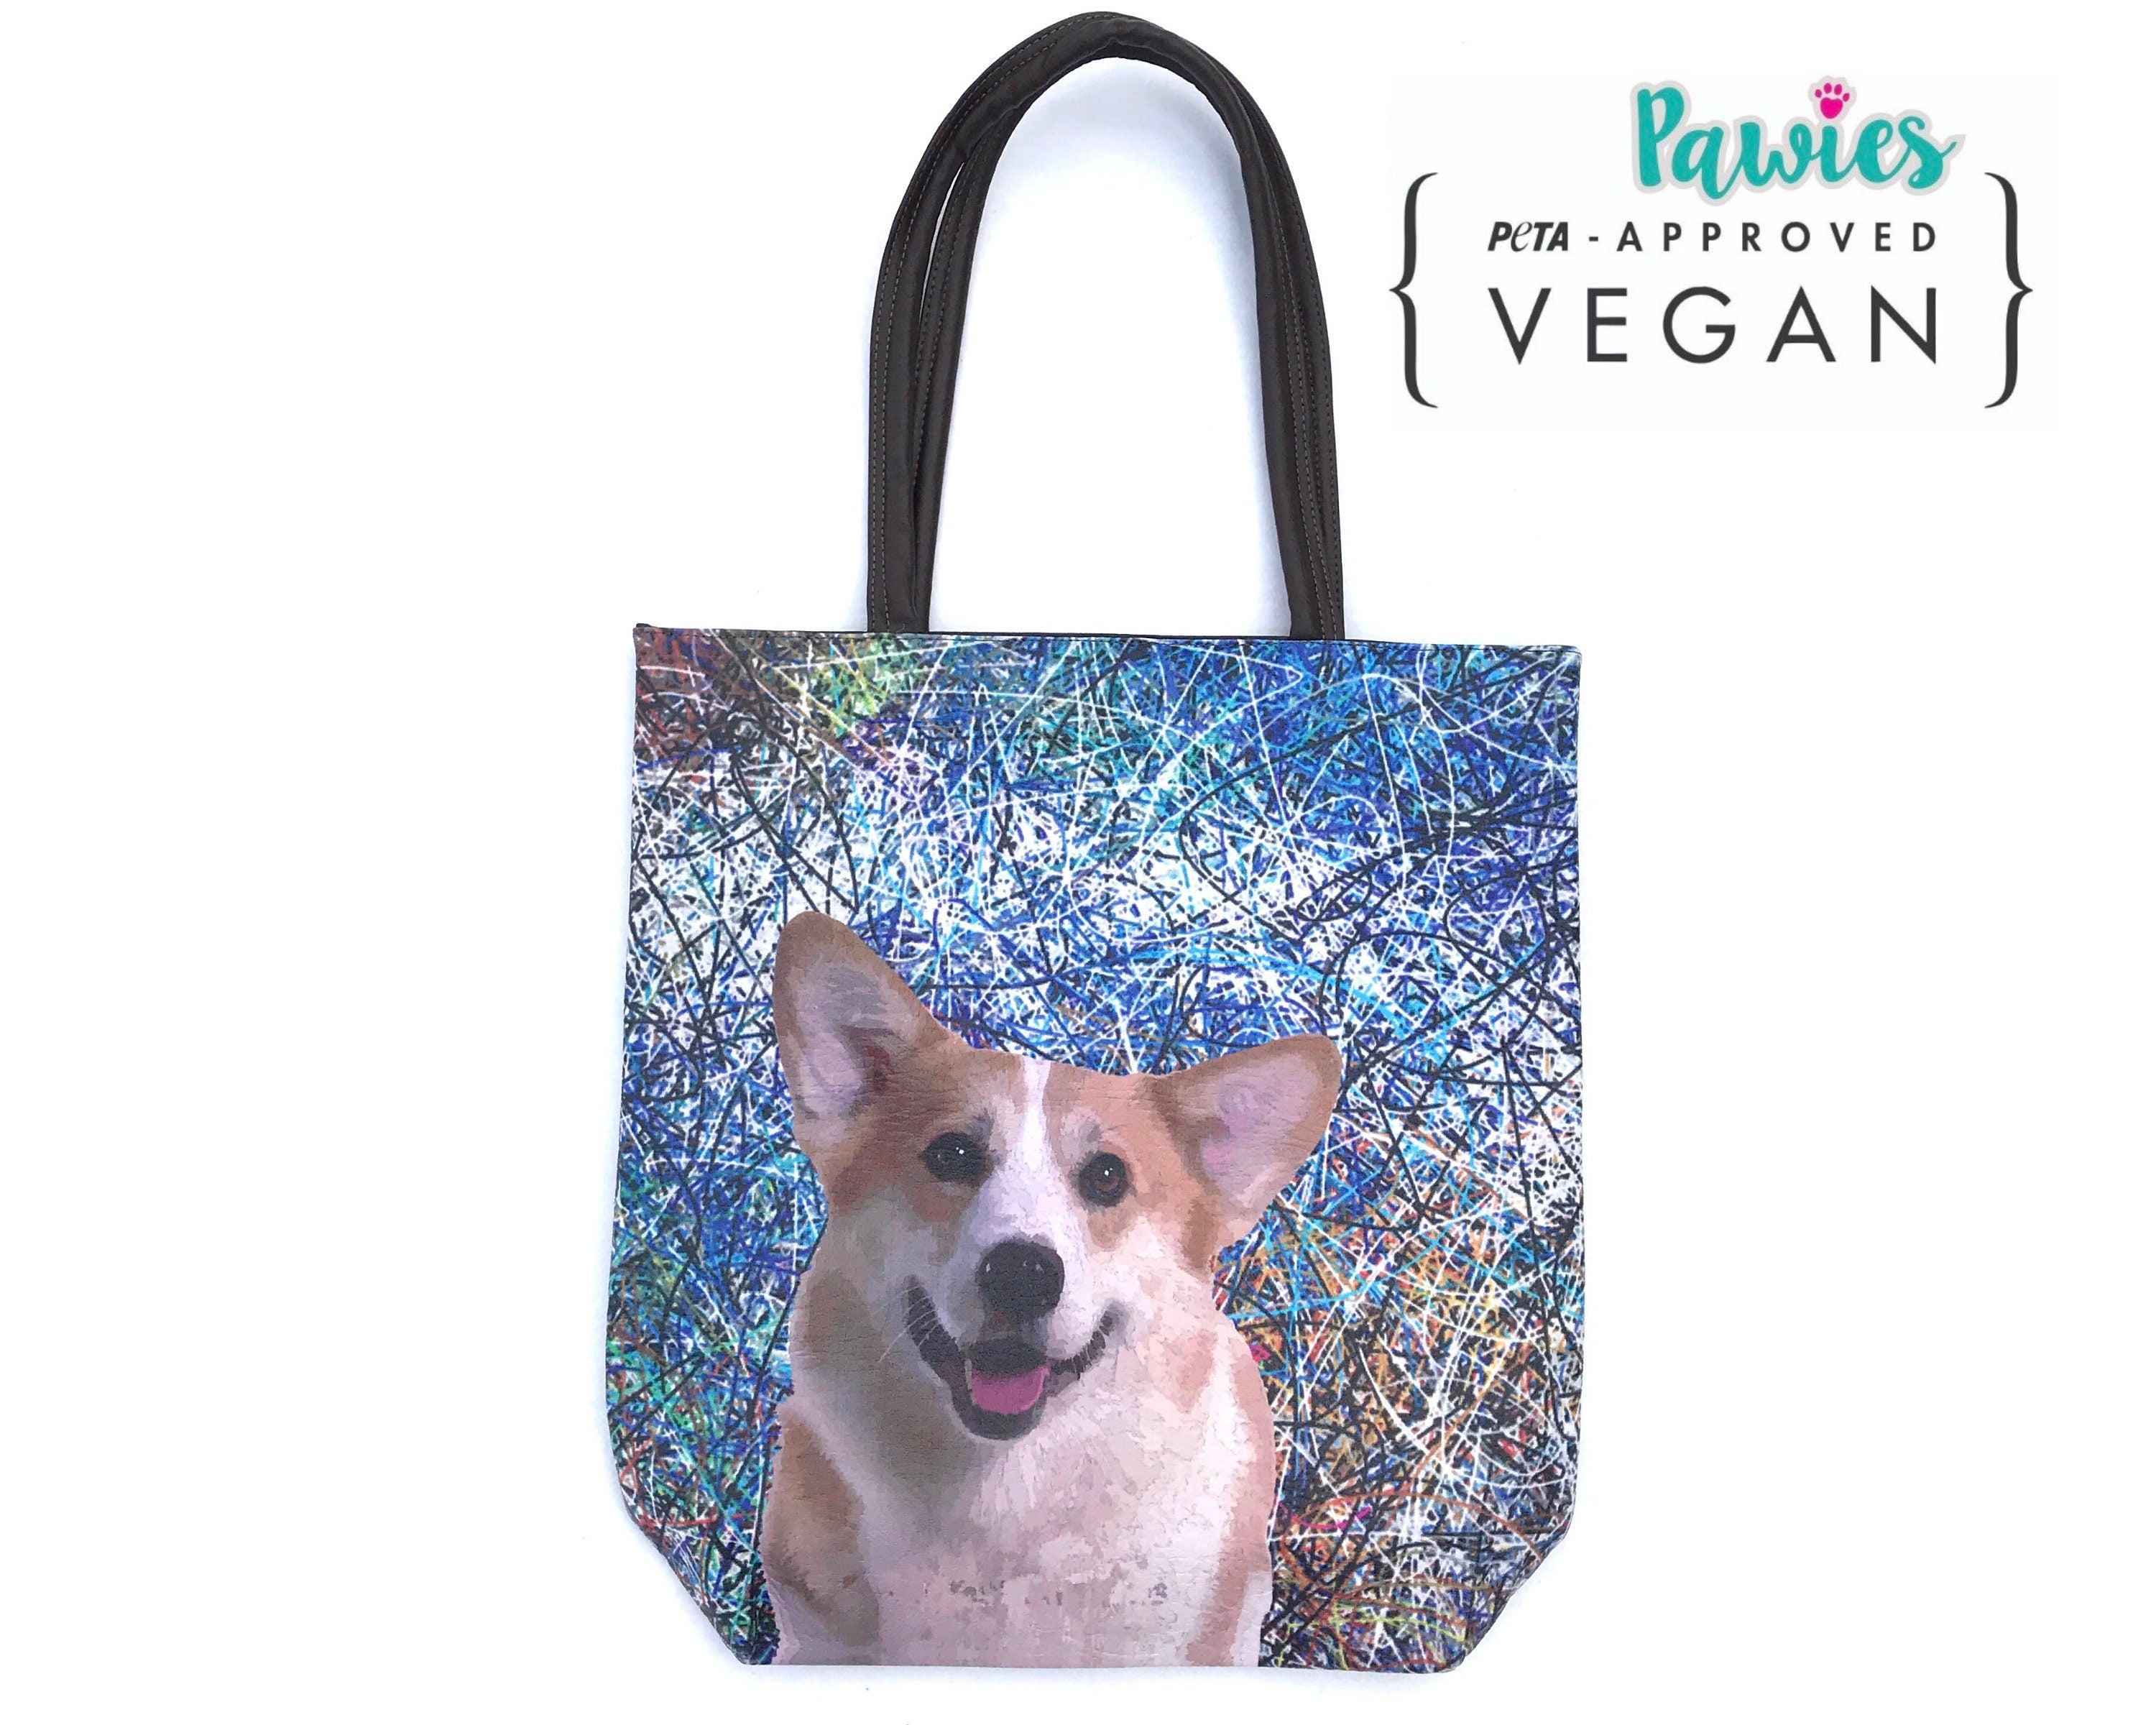 Corgi Vegan Leather Tote bag, tote bag, animal lovers, dog lover, pawies, vegan leather, corgi, hand bag